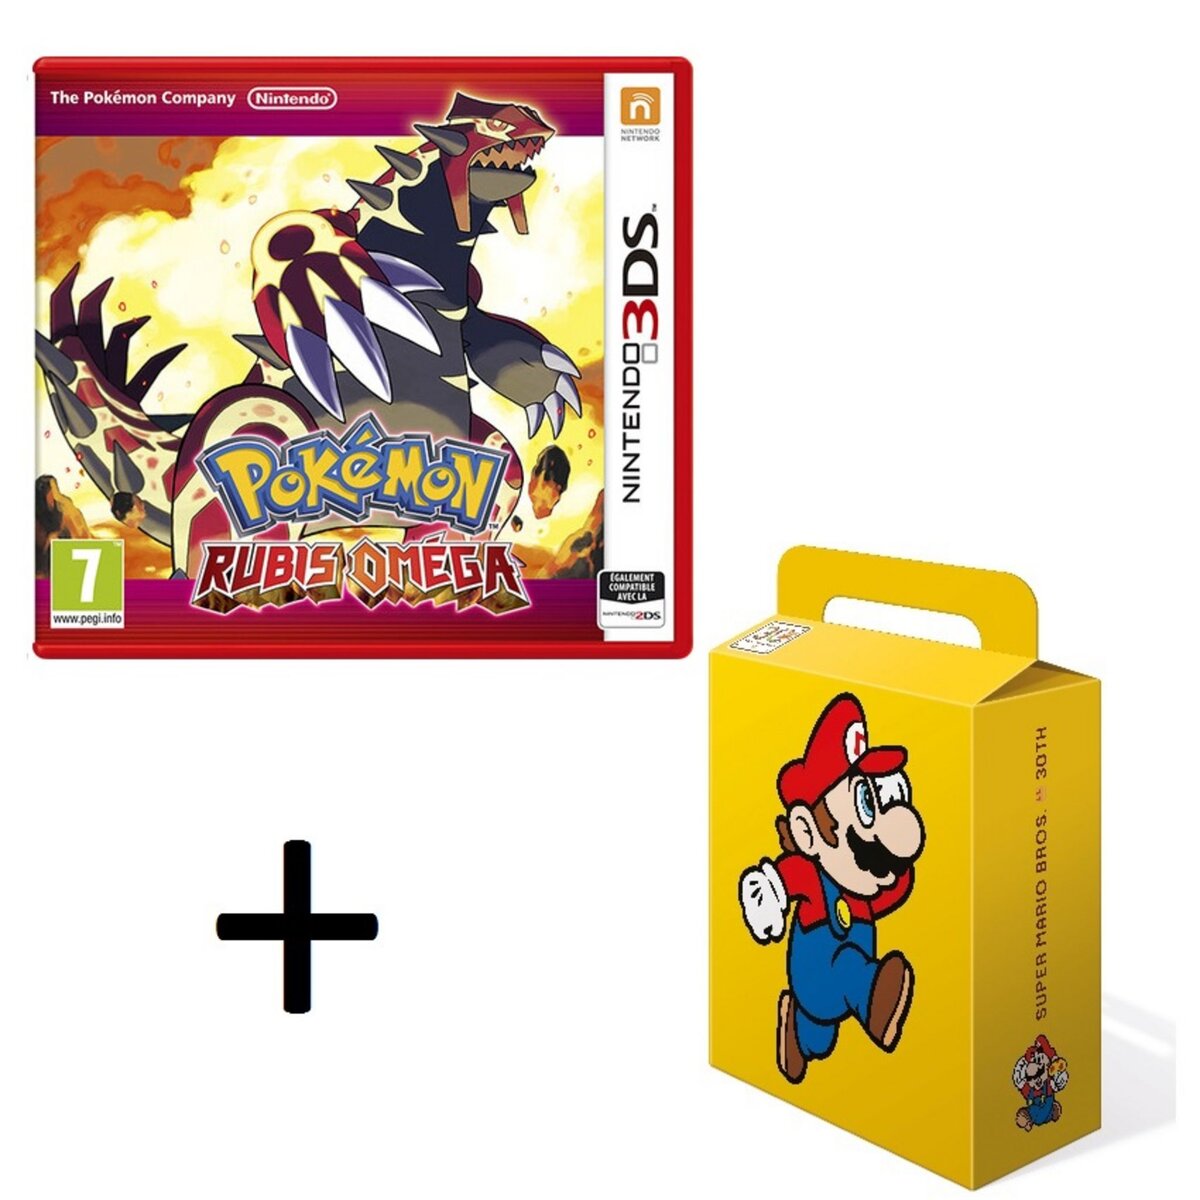 Pokémon Rubis Oméga 3DS + Boite cadeau "Mario" pour jeu 3DS